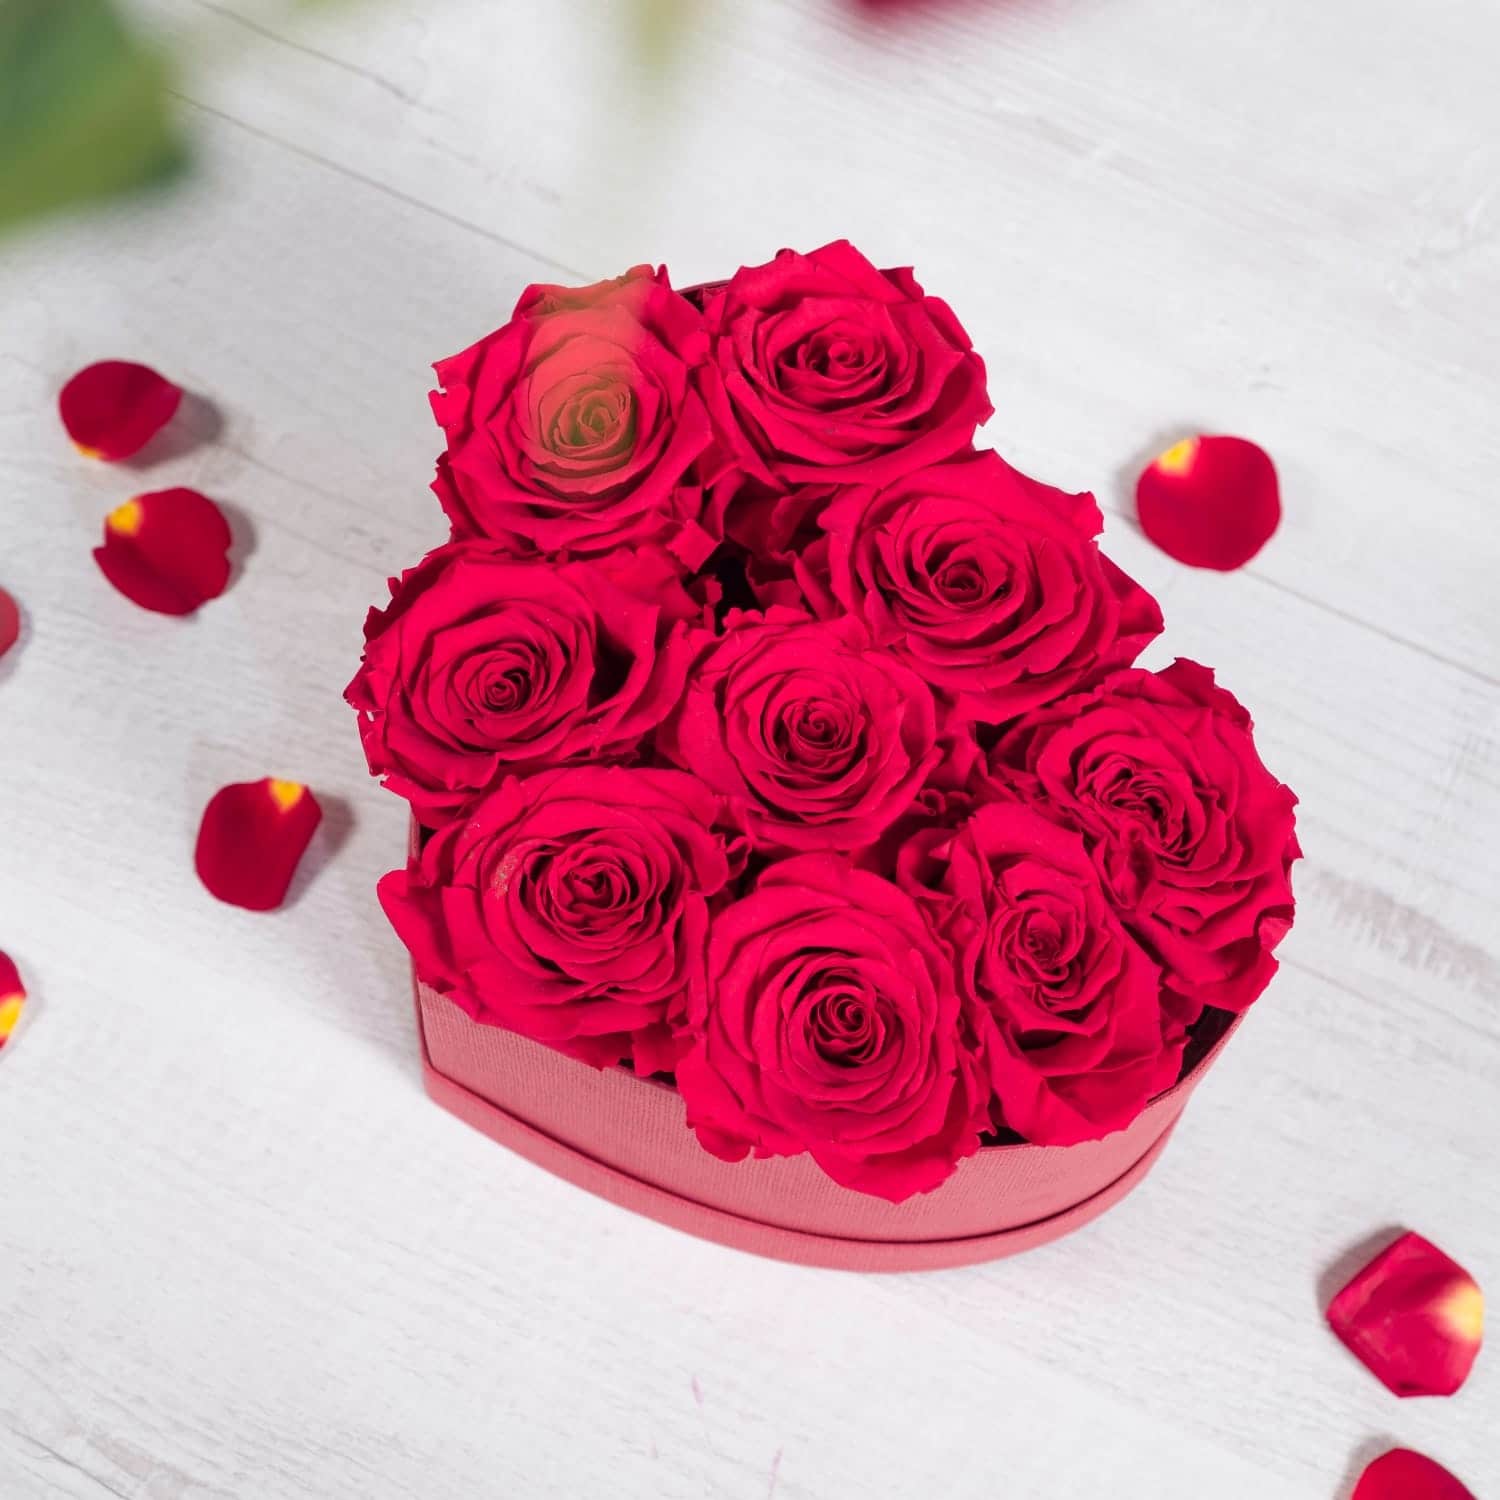 Compositions florales avec des roses rouges